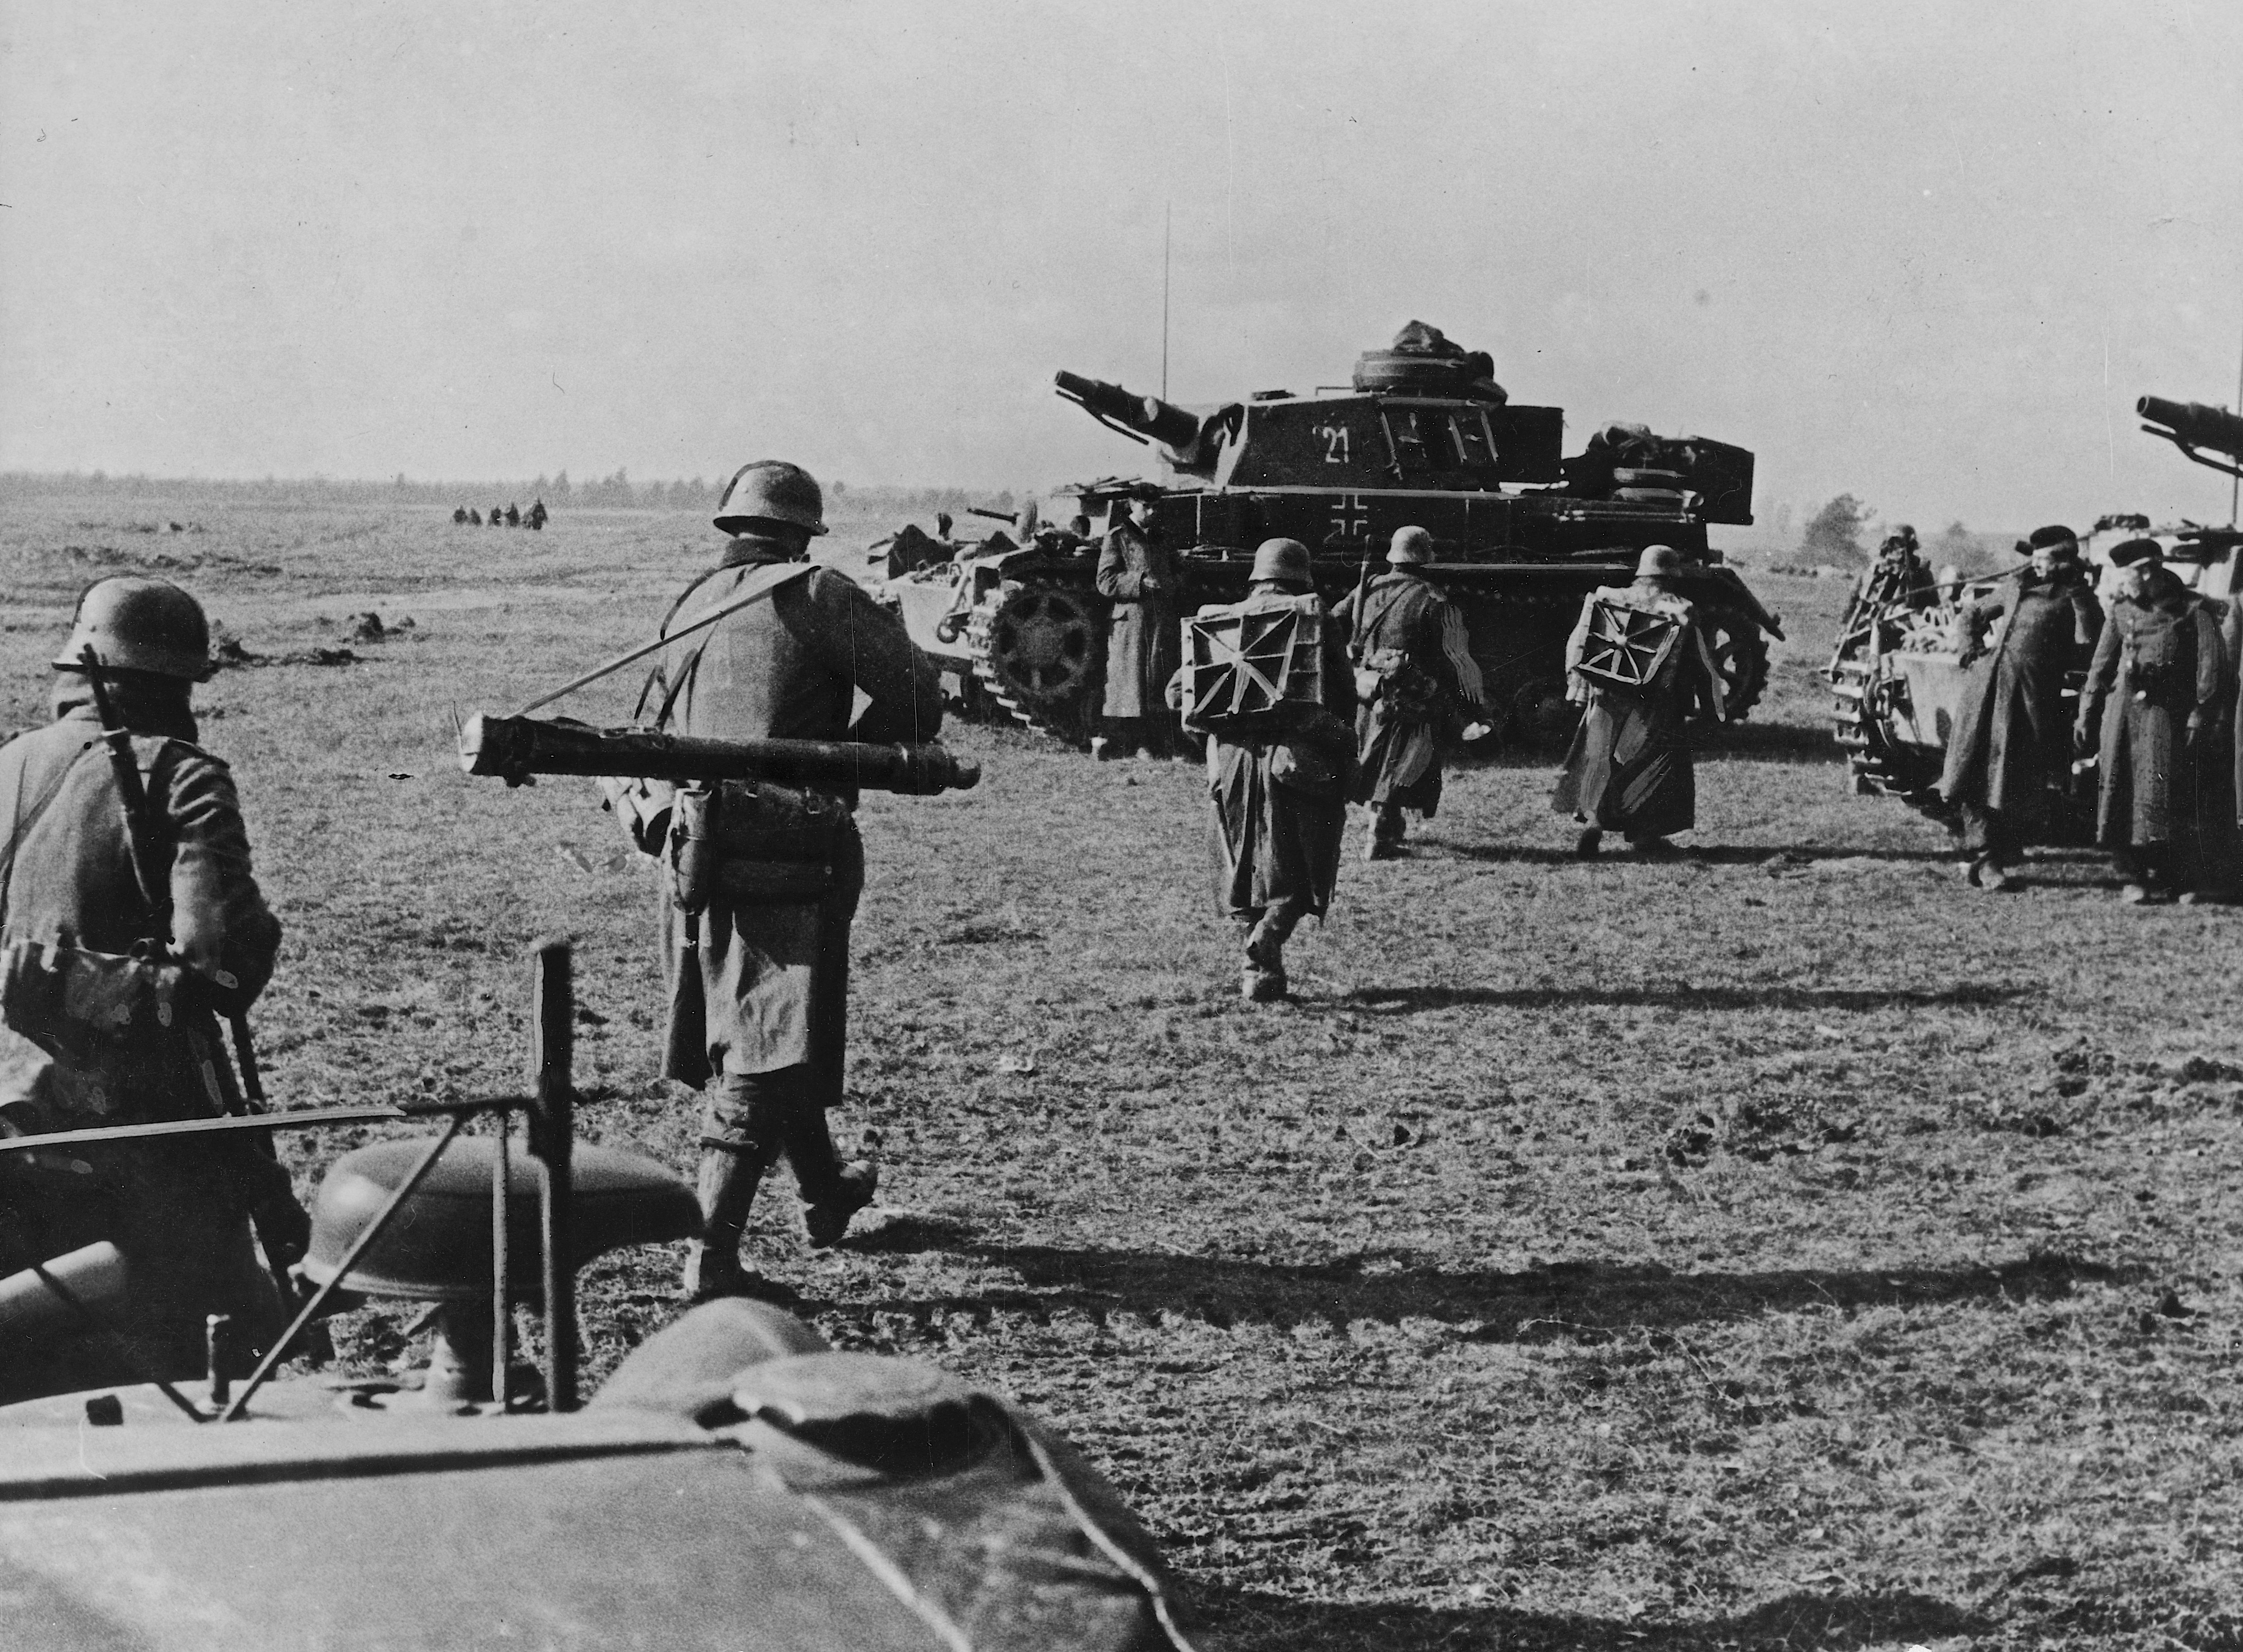 Октябрь 1941 начало обороны. Бои под Вязьмой 1941. Немецкие танки од Вязьмой 1941. Бои под Вязьмой в октябре 1941 года. Катастрофа под Вязьмой 1941.